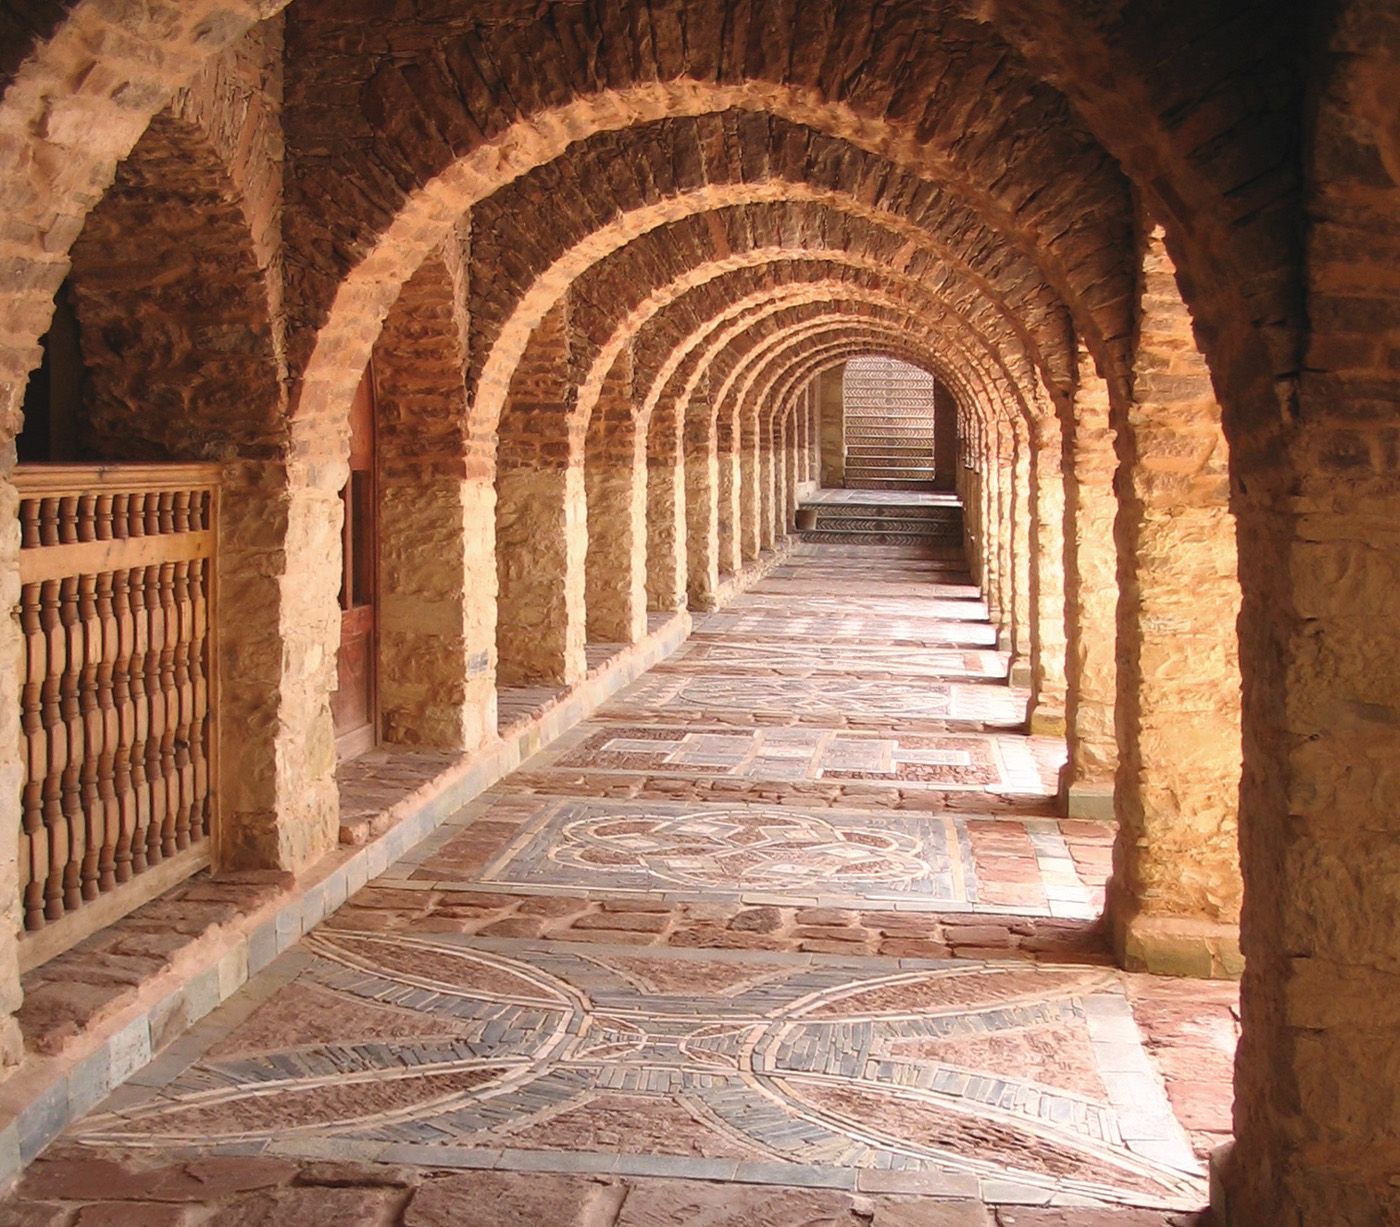 The Medina of Agadir